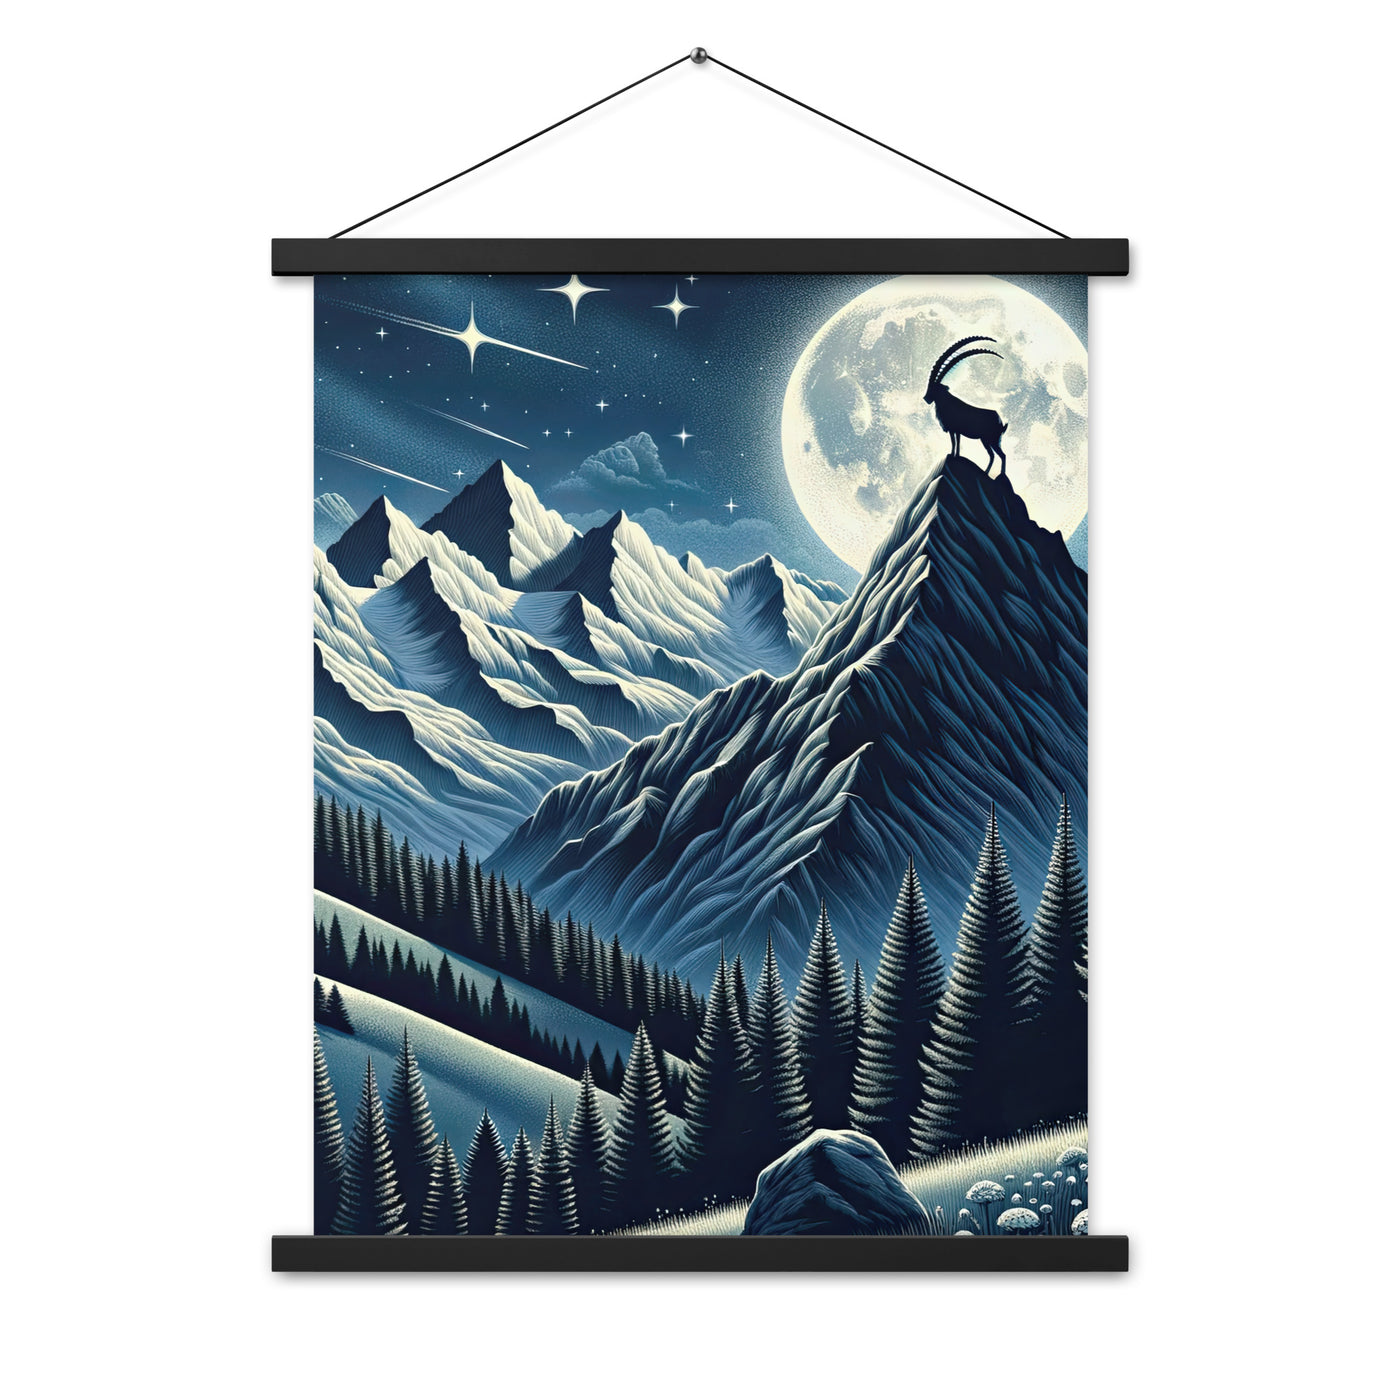 Steinbock in Alpennacht, silberne Berge und Sternenhimmel - Premium Poster mit Aufhängung berge xxx yyy zzz 45.7 x 61 cm